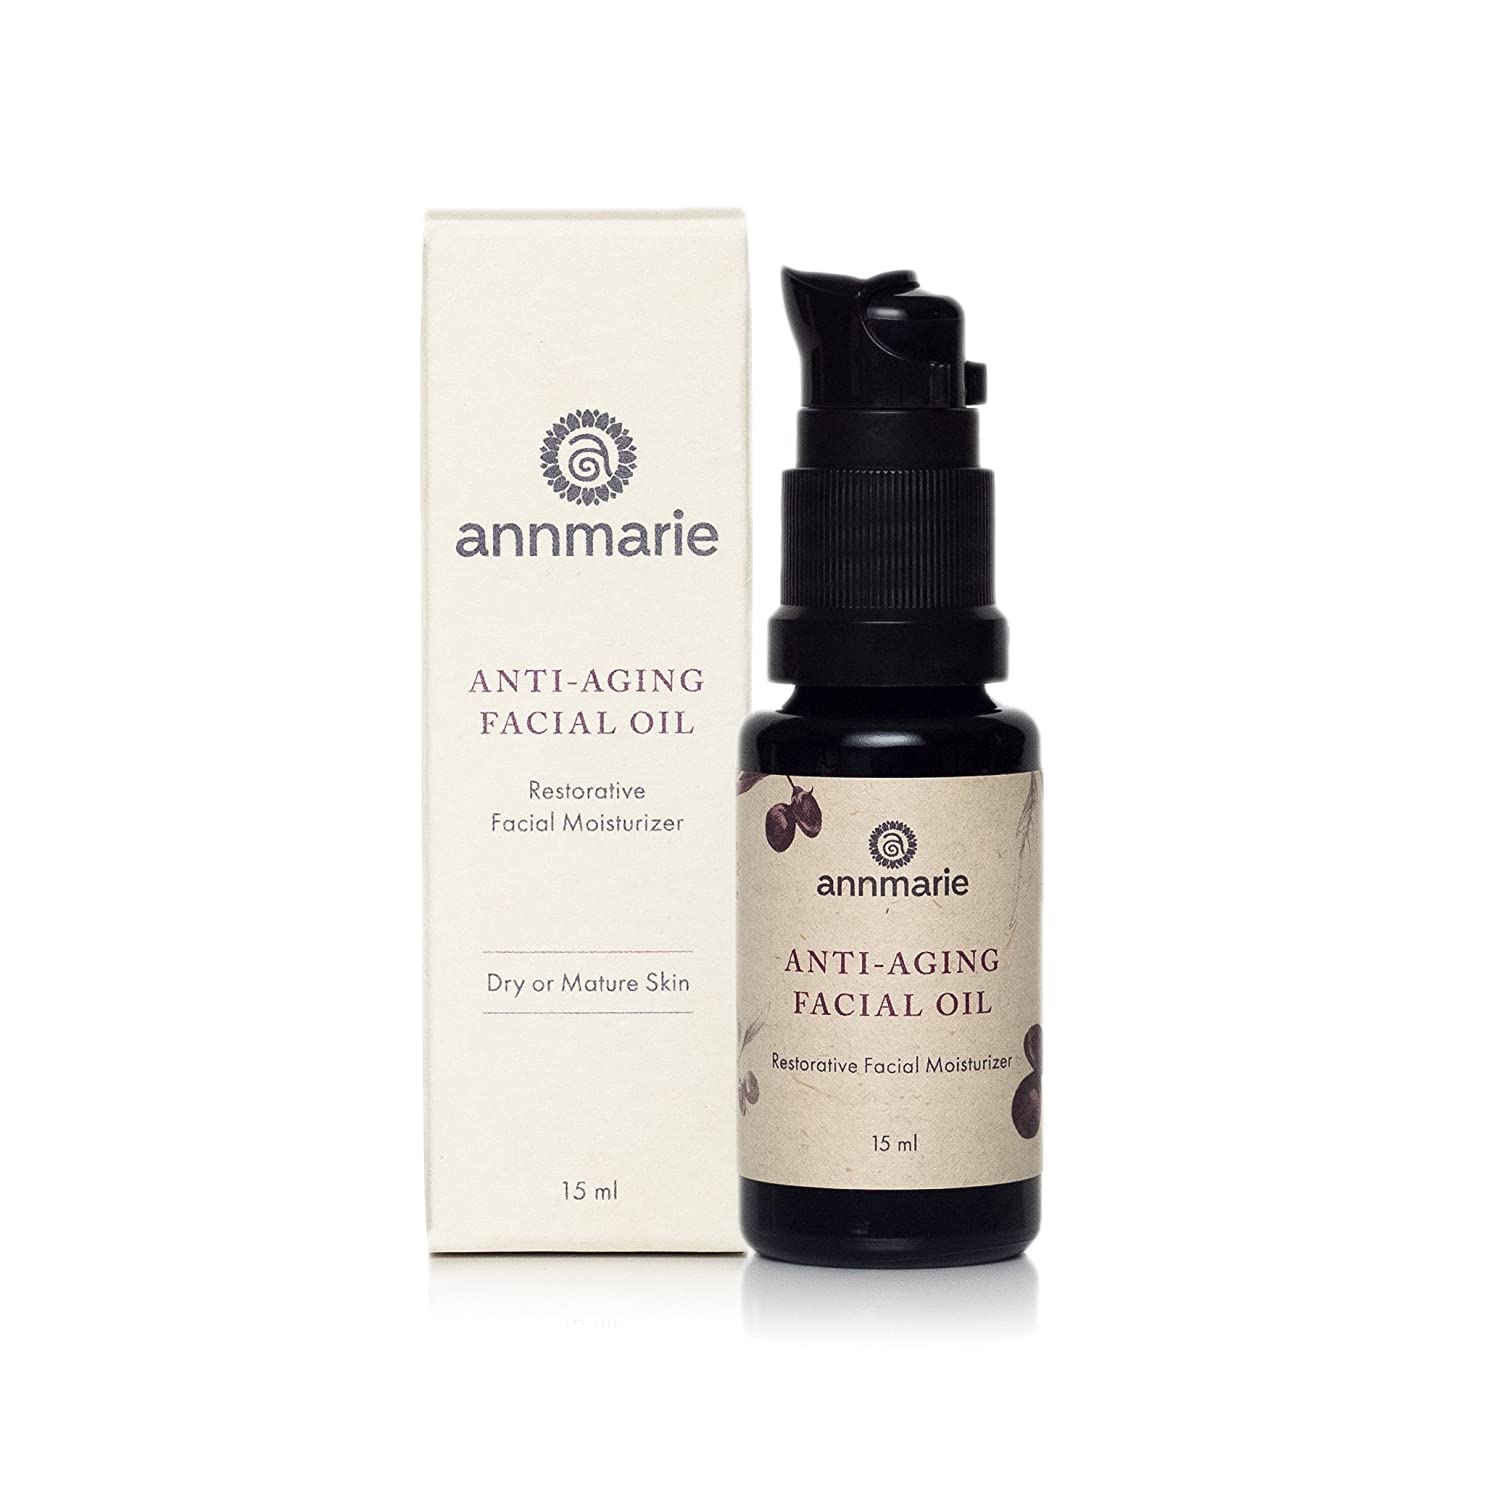 Annmarie Anti-aging facial oil